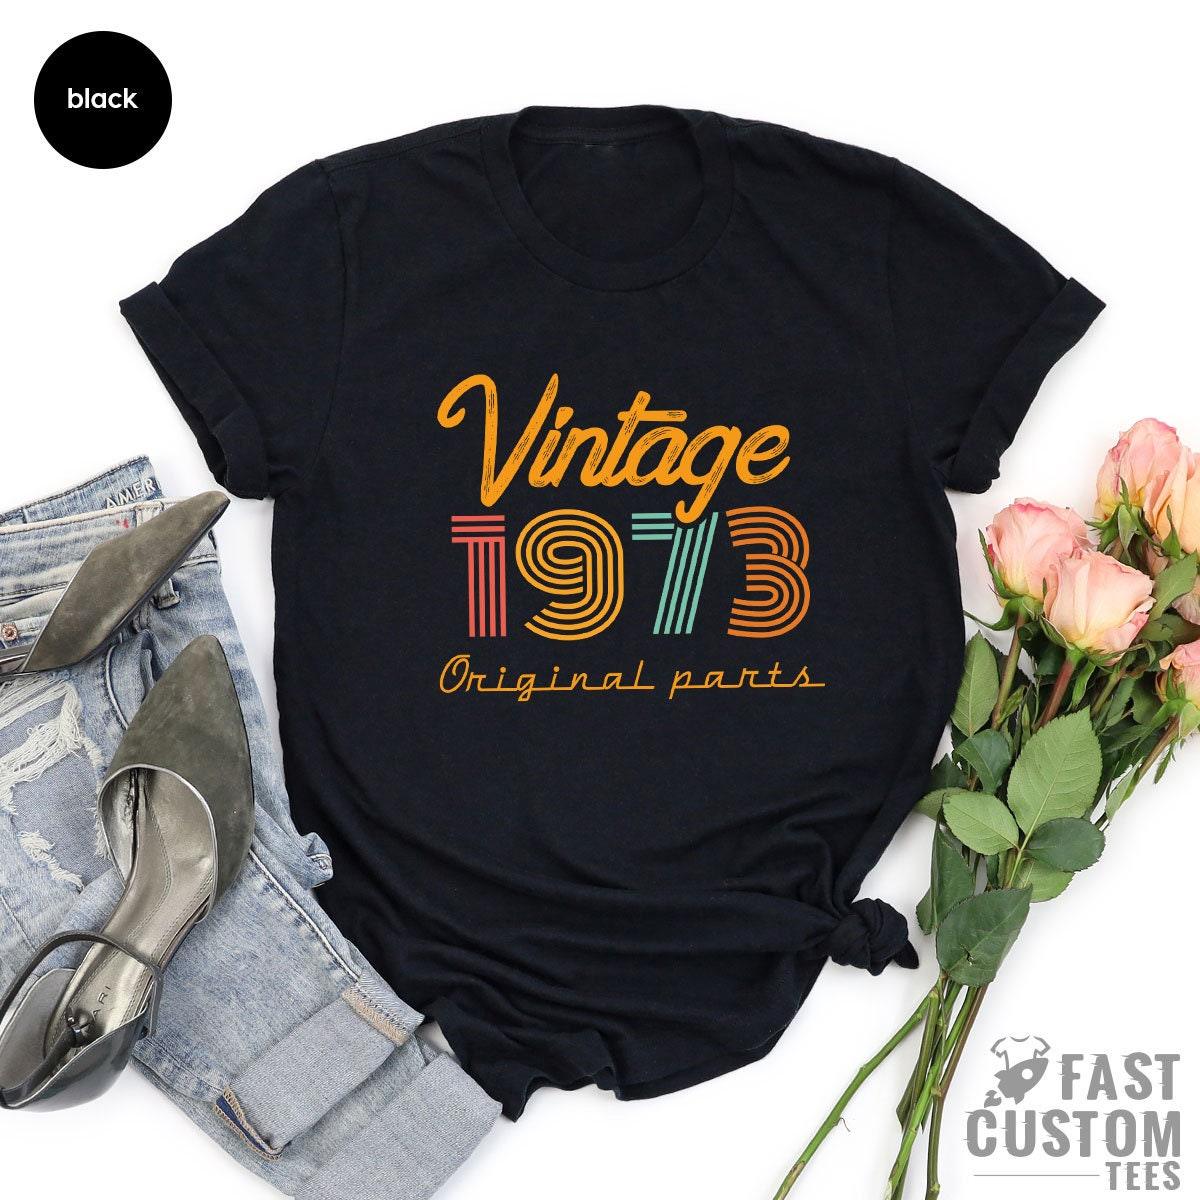 48th Birthday T Shirt, Vintage T Shirt, Vintage 1973 Shirt, 68th Birthday Gift For Women, 48th Birthday Shirt Men, Retro Shirt, Vintage Shirts - Fastdeliverytees.com